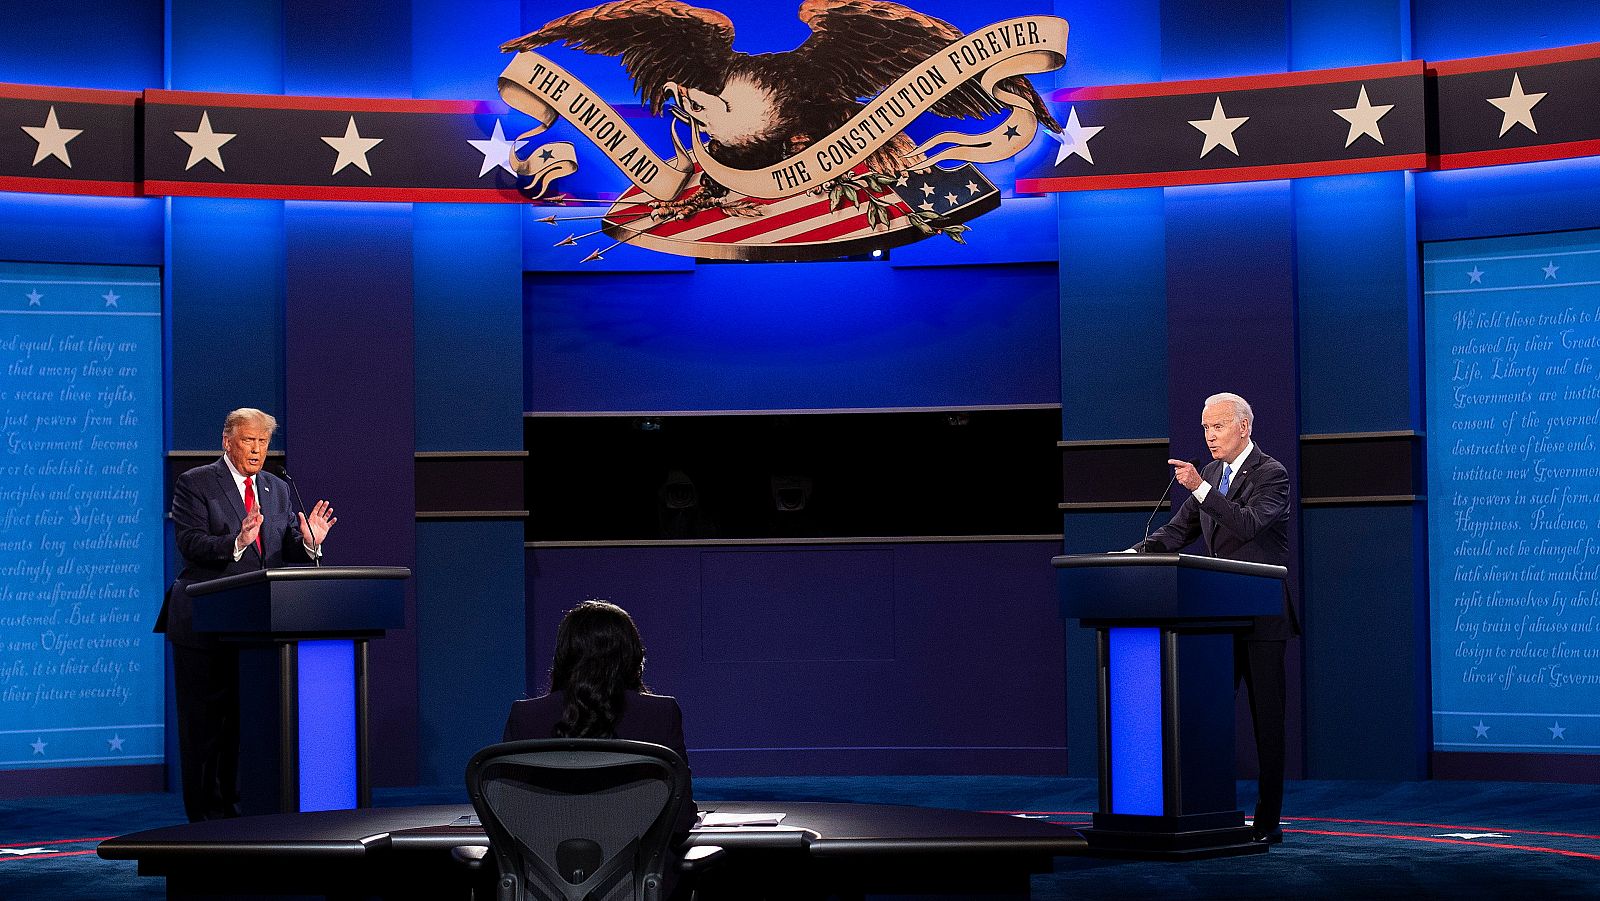 �ltimo debate electoral en EE.UU. con mejor tono